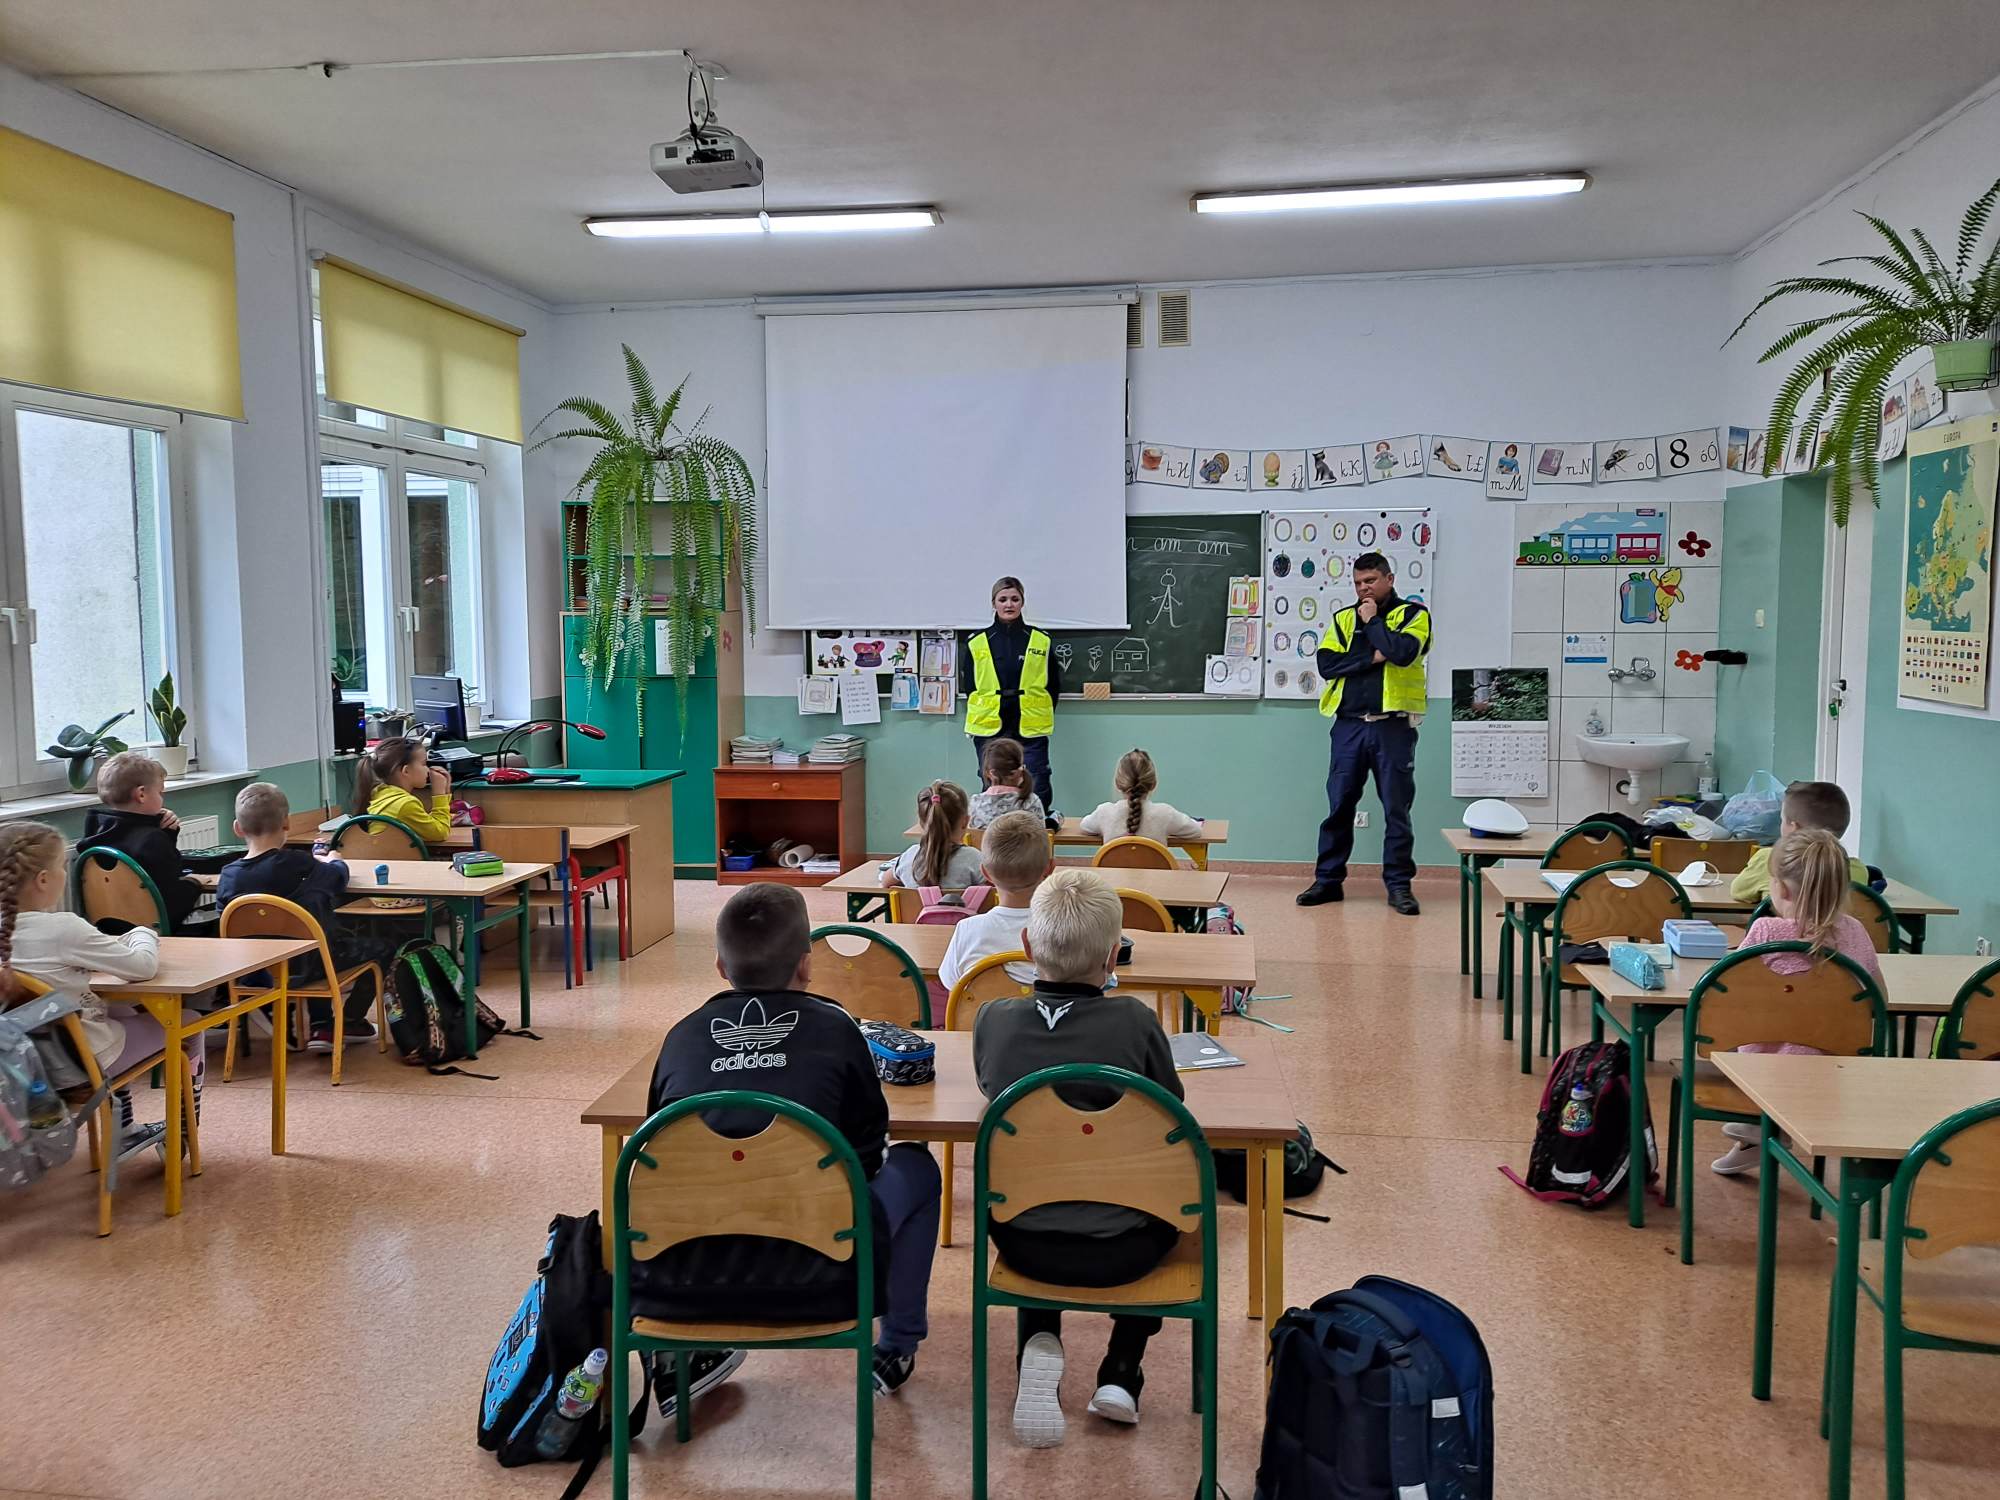 Policjanci ruchu drogowego prowadzą pogadankę z dziećmi w sali lekcyjnej